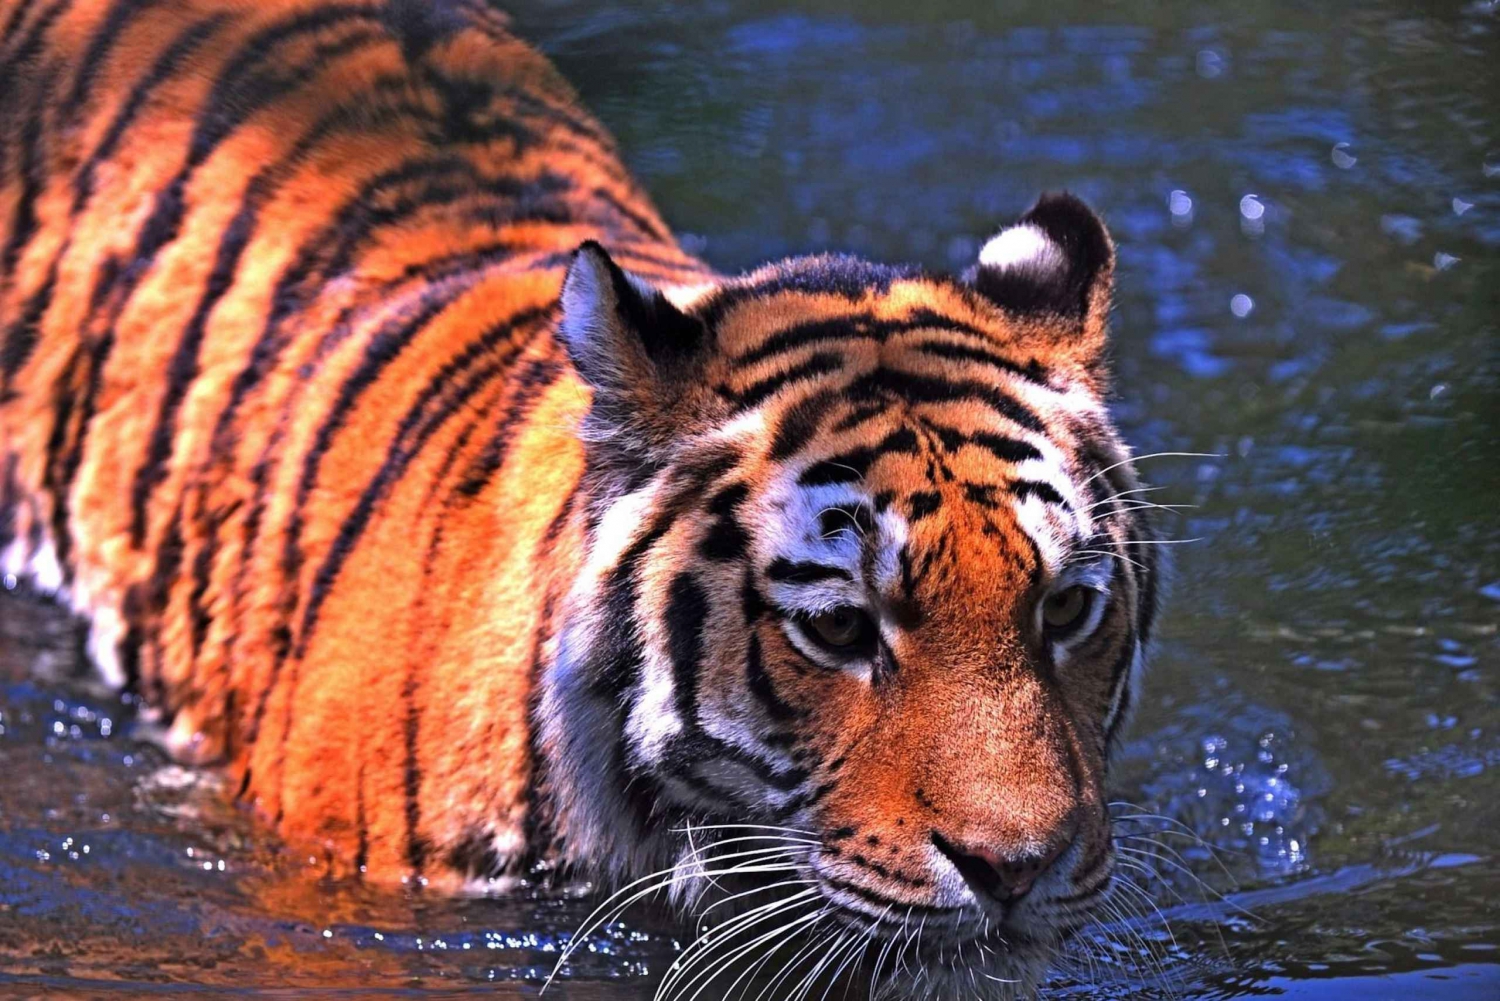 From New Delhi: 5-Day Tiger Safari & Golden Triangle Tour